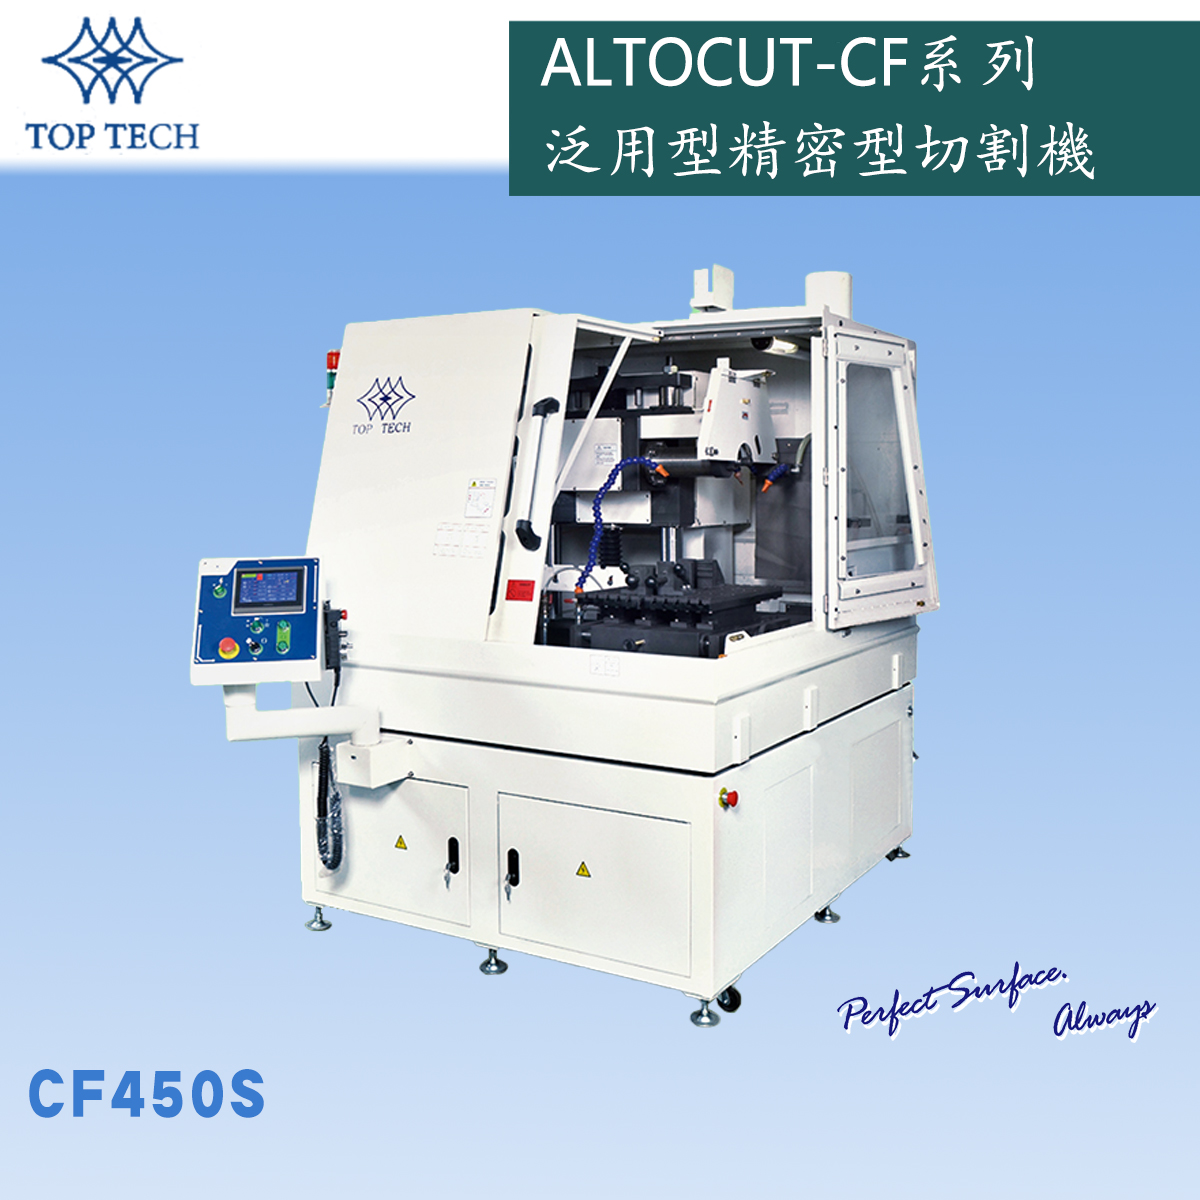  CF450S泛用型精密金相切割机